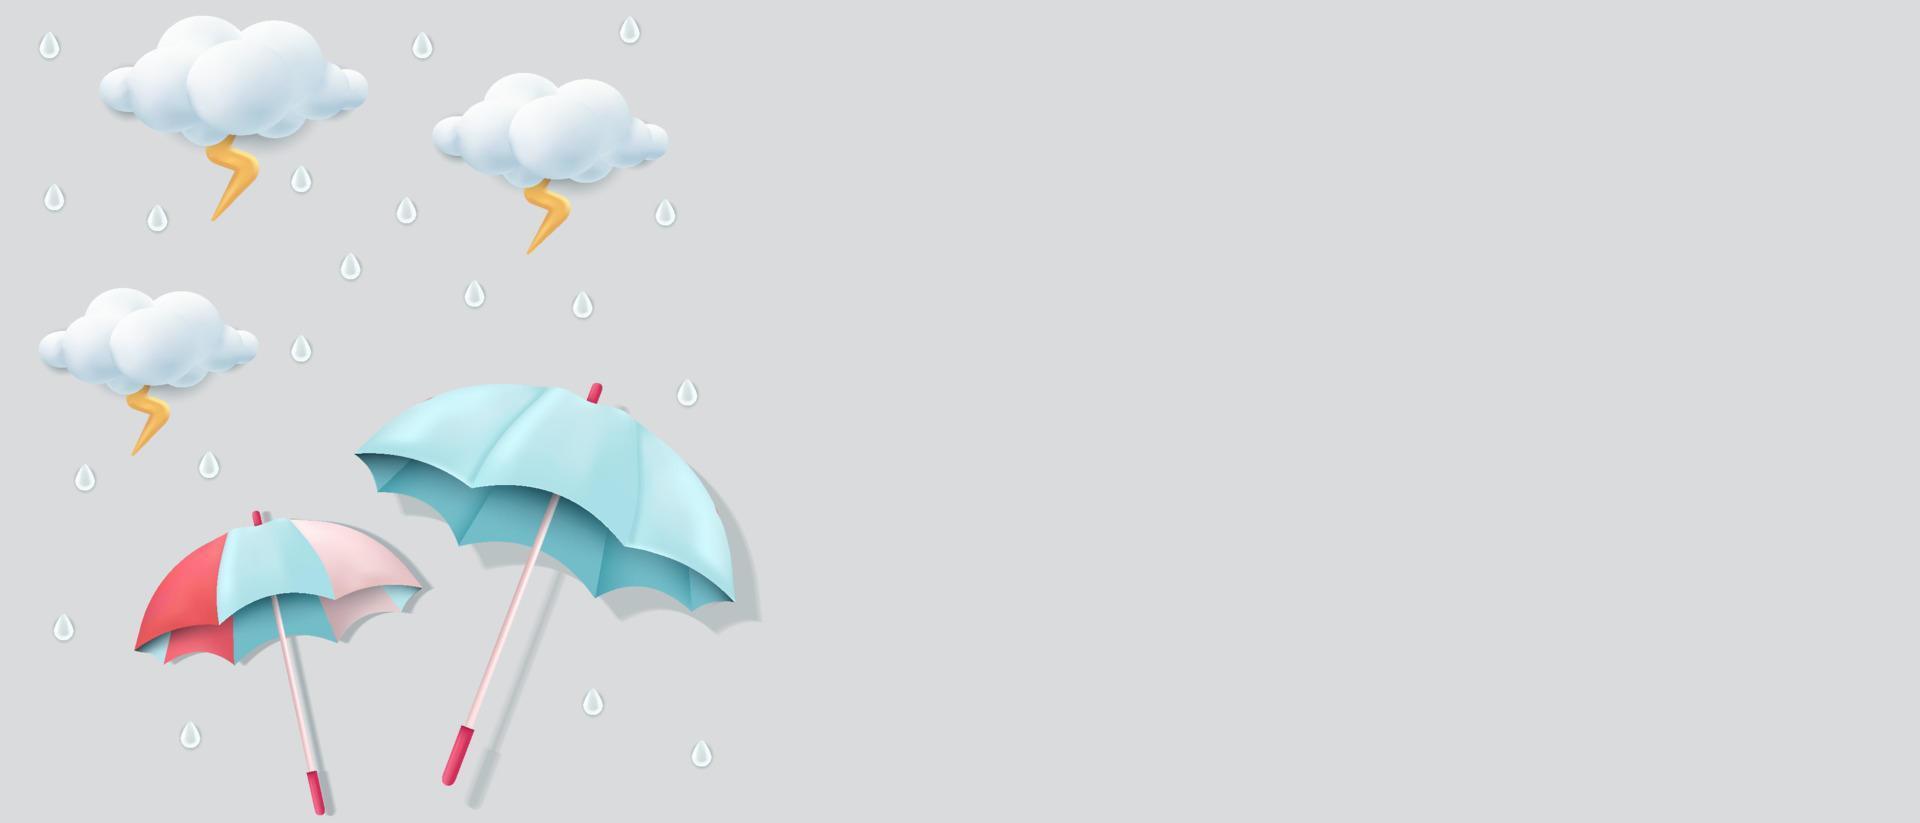 regenschirme, wolken und donner 3d-illustration für monsunzeithintergrund mit kopierraumbereich vektor